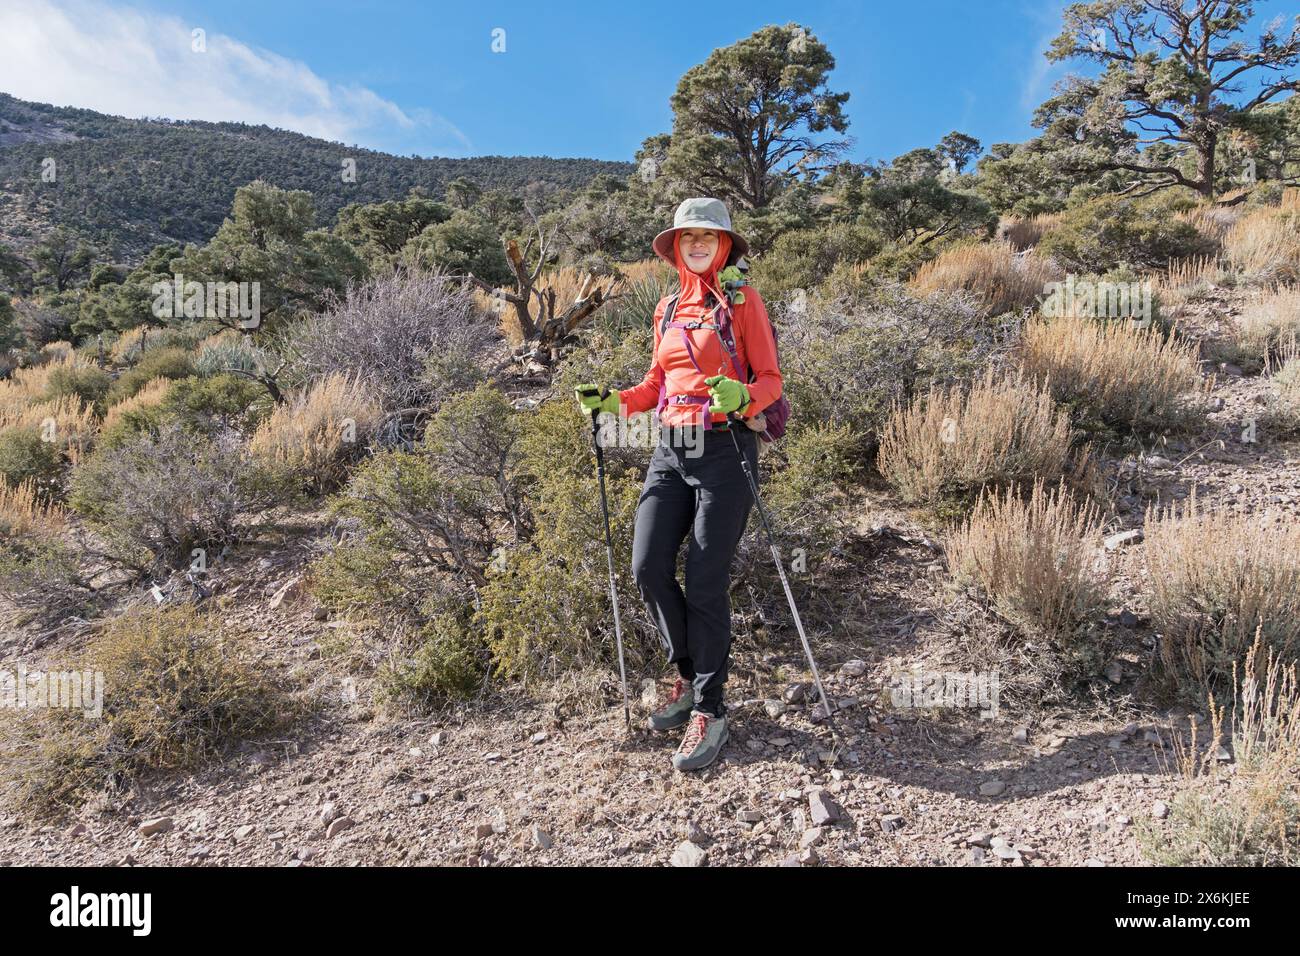 Femme américaine asiatique dans des vêtements de protection solaire randonnée vers le bas du mont Stirling dans le Nevada Banque D'Images